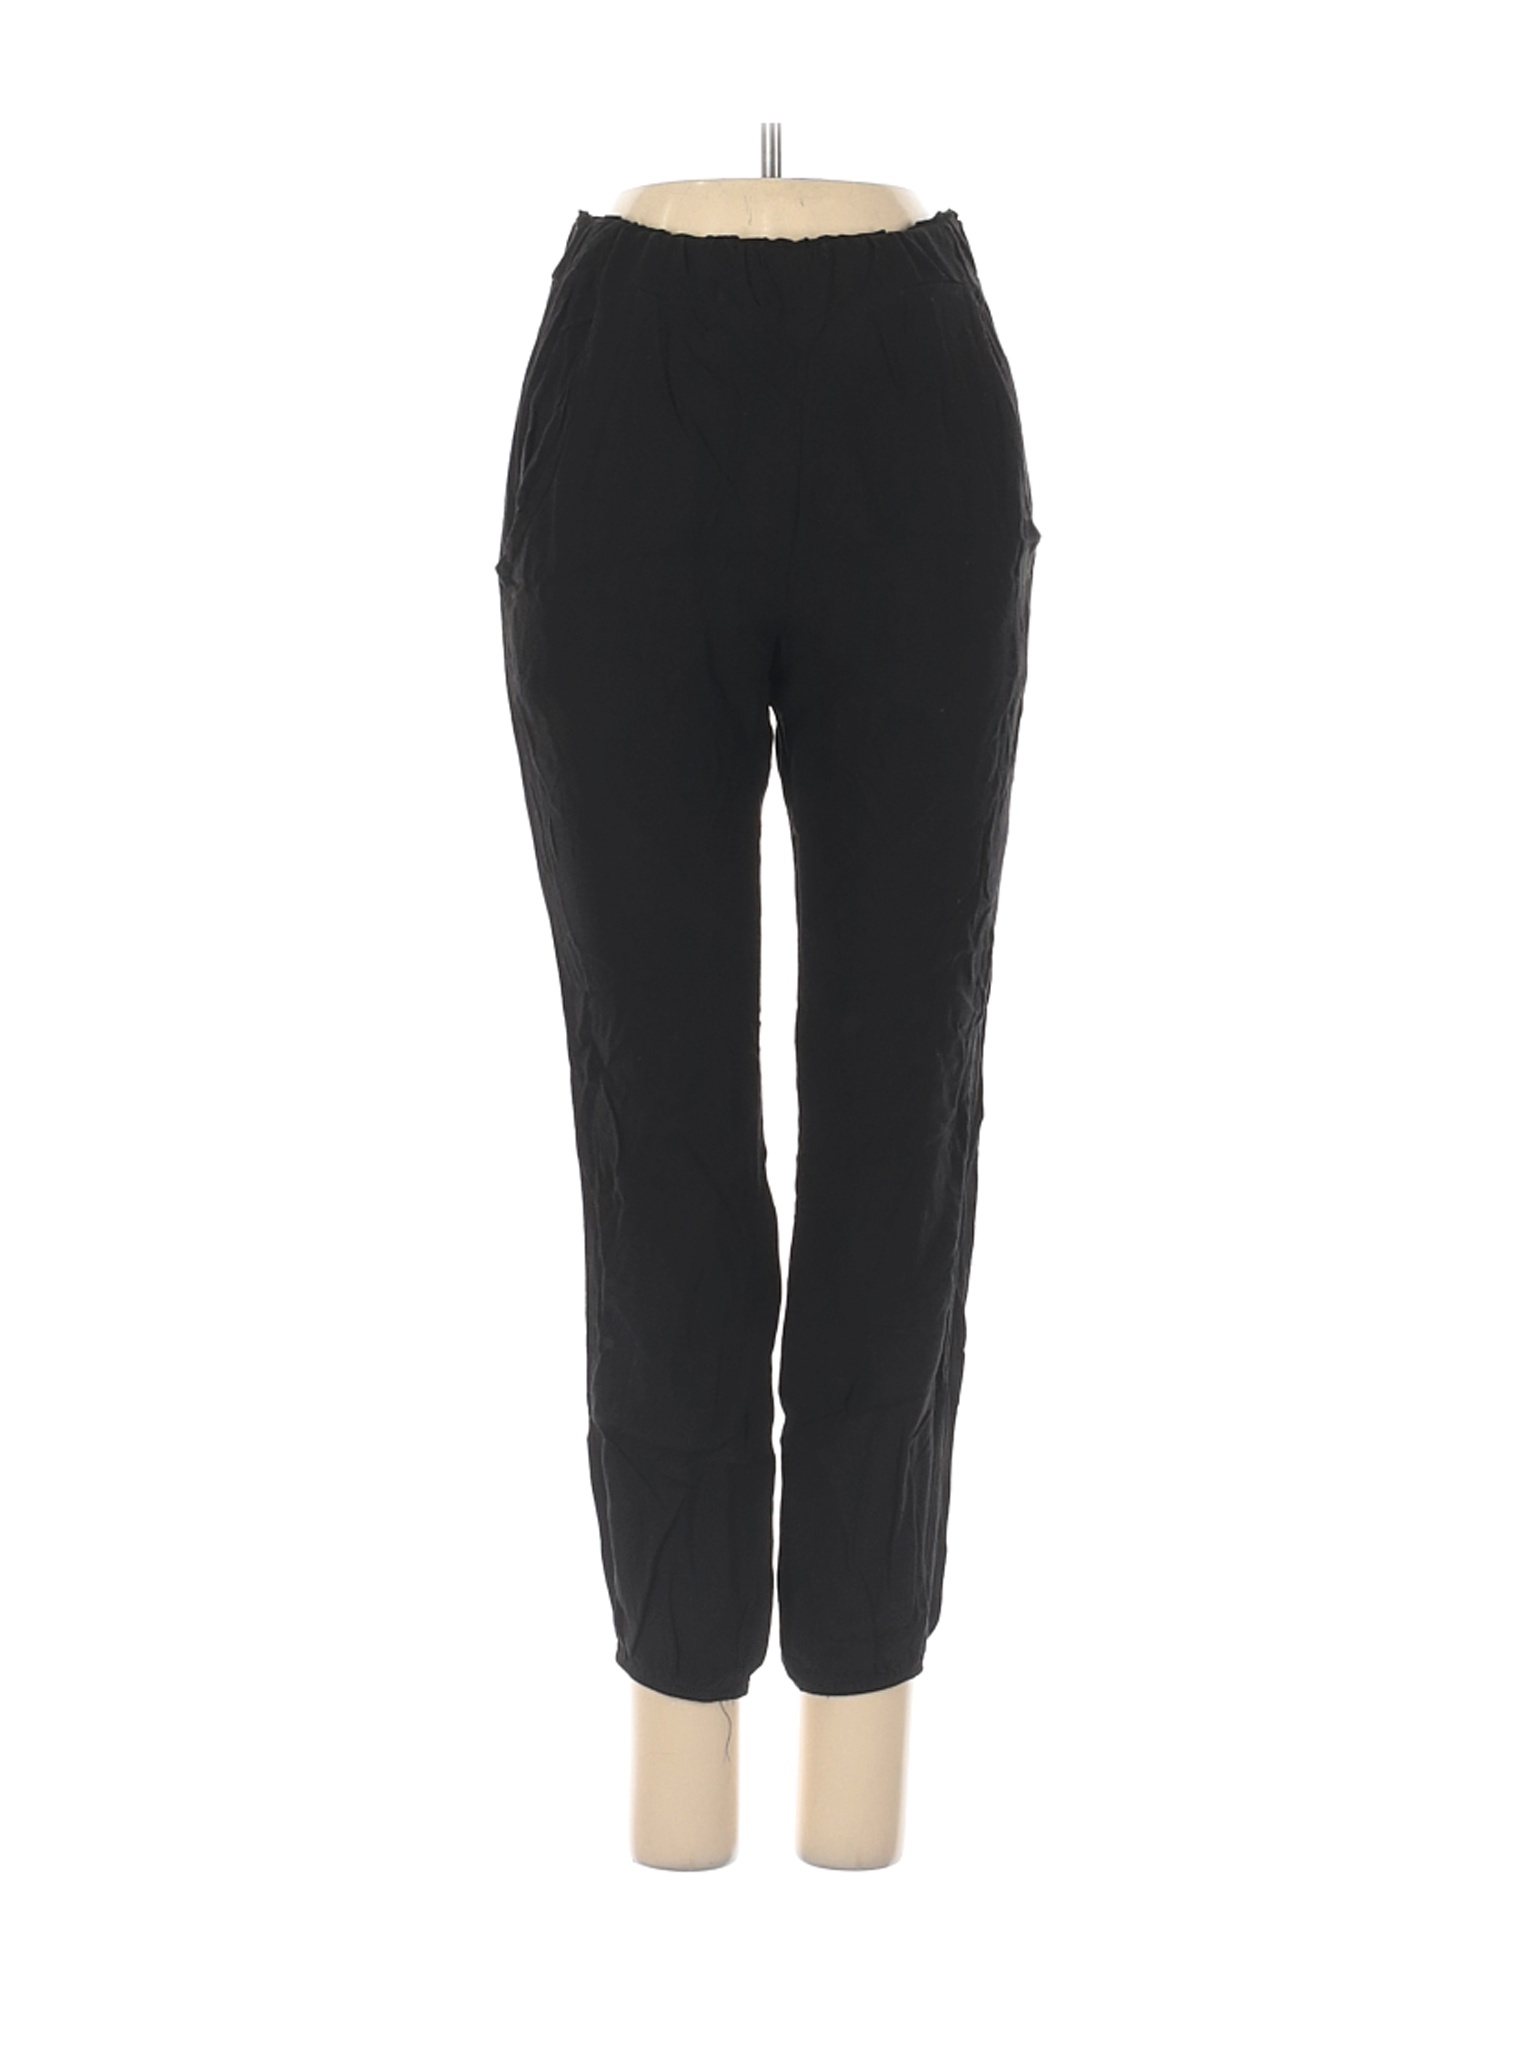 LA Hearts Women Black Casual Pants XS | eBay